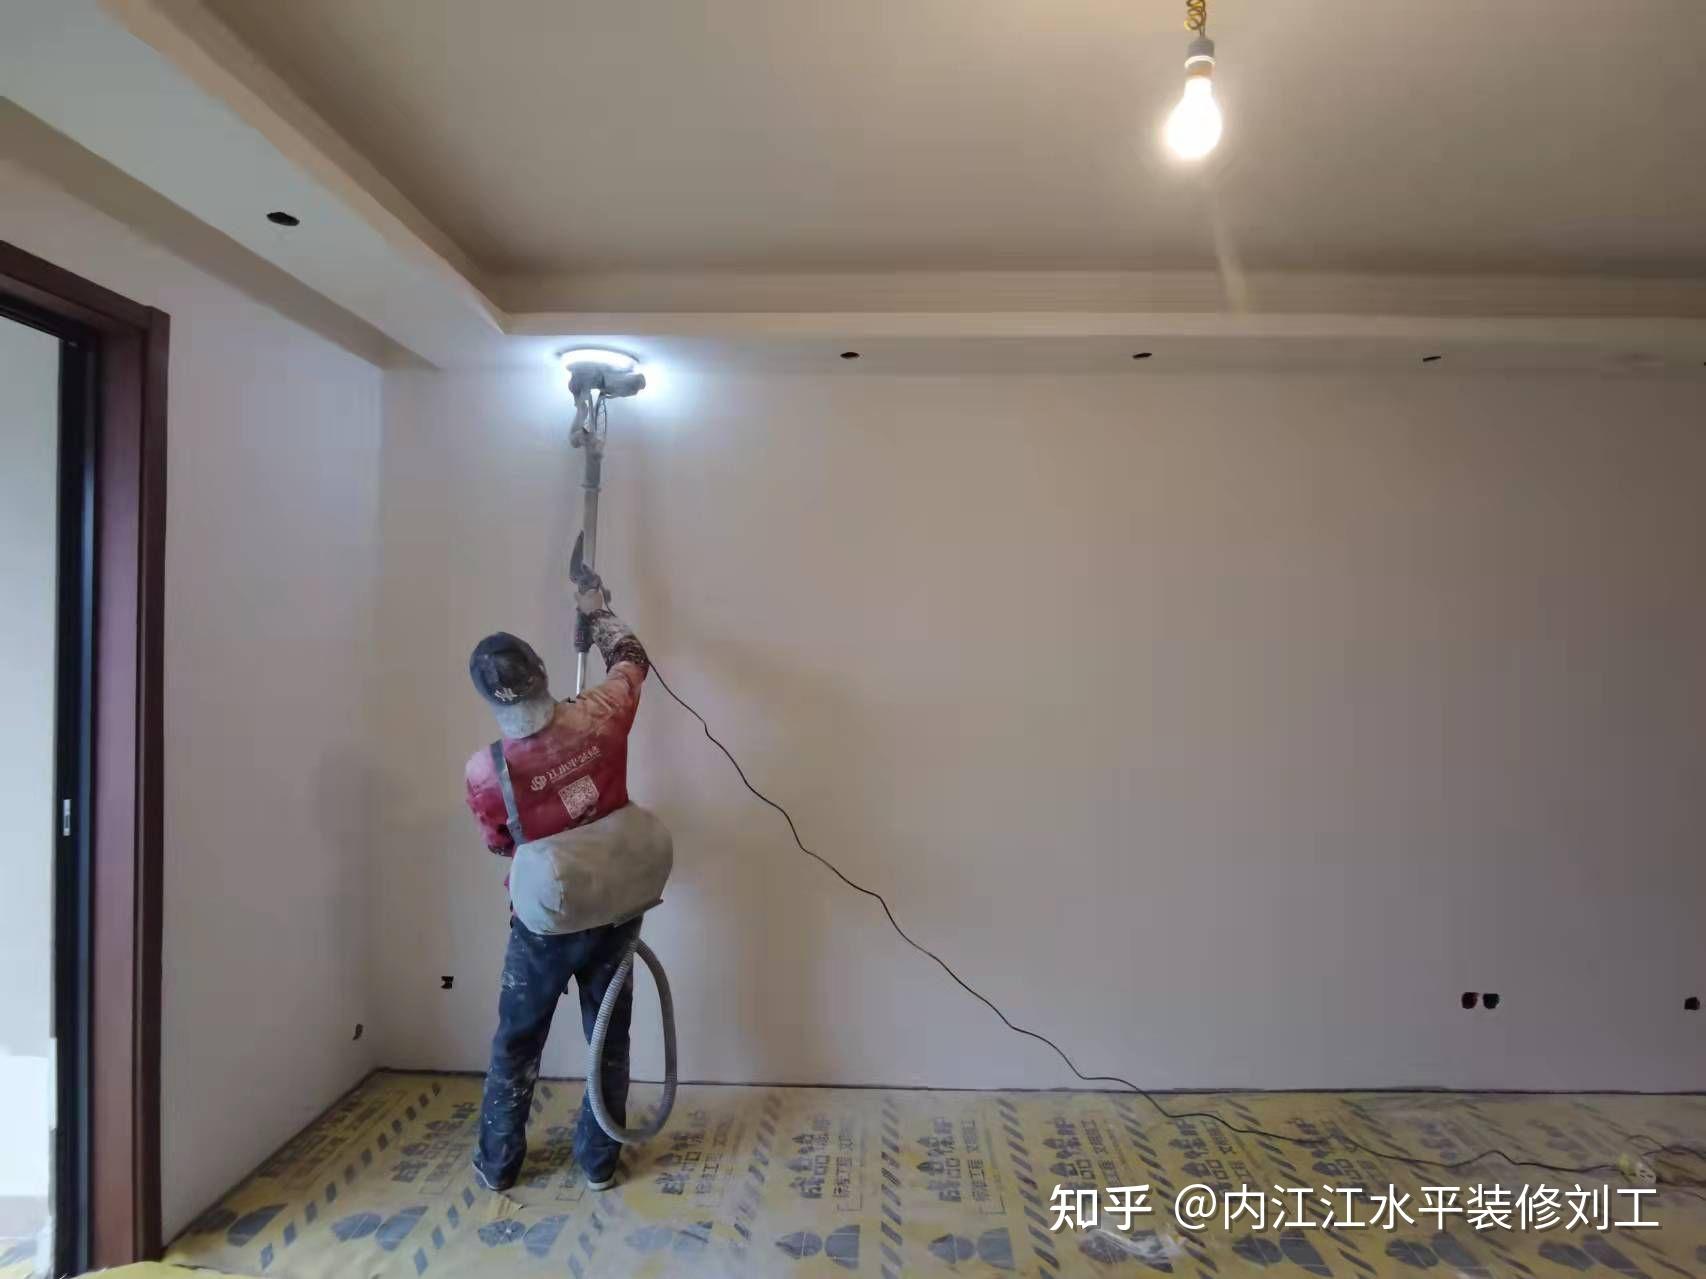 所以打磨完我们的工人都会用手电或者靠尺来检验墙面平整度,出现问题